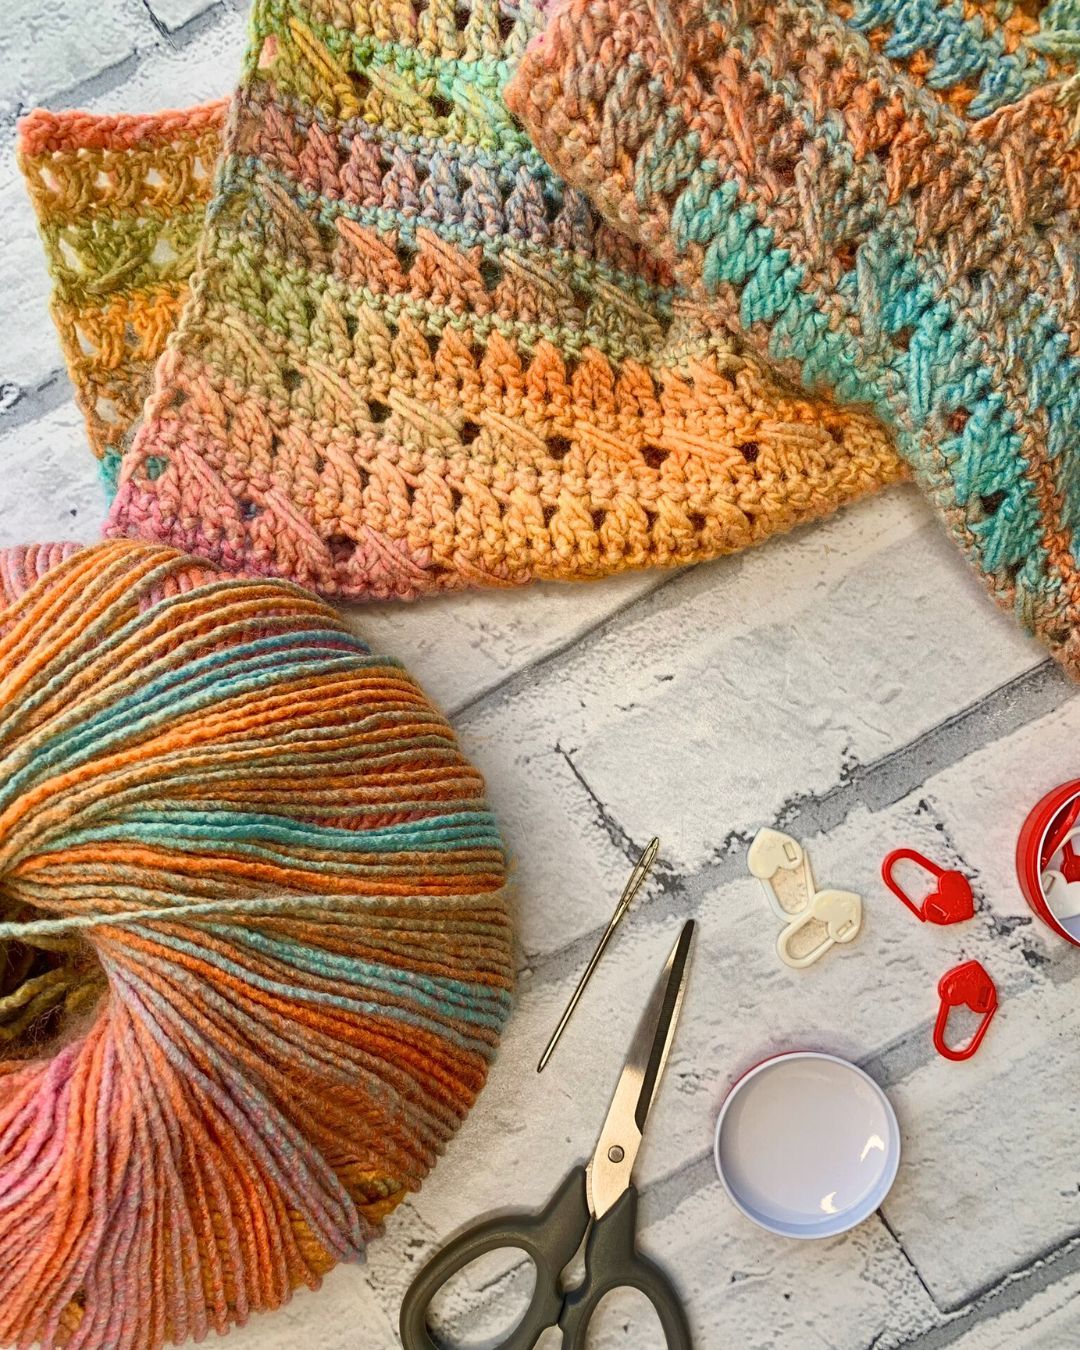 Crochet Cardigan Pattern in progress